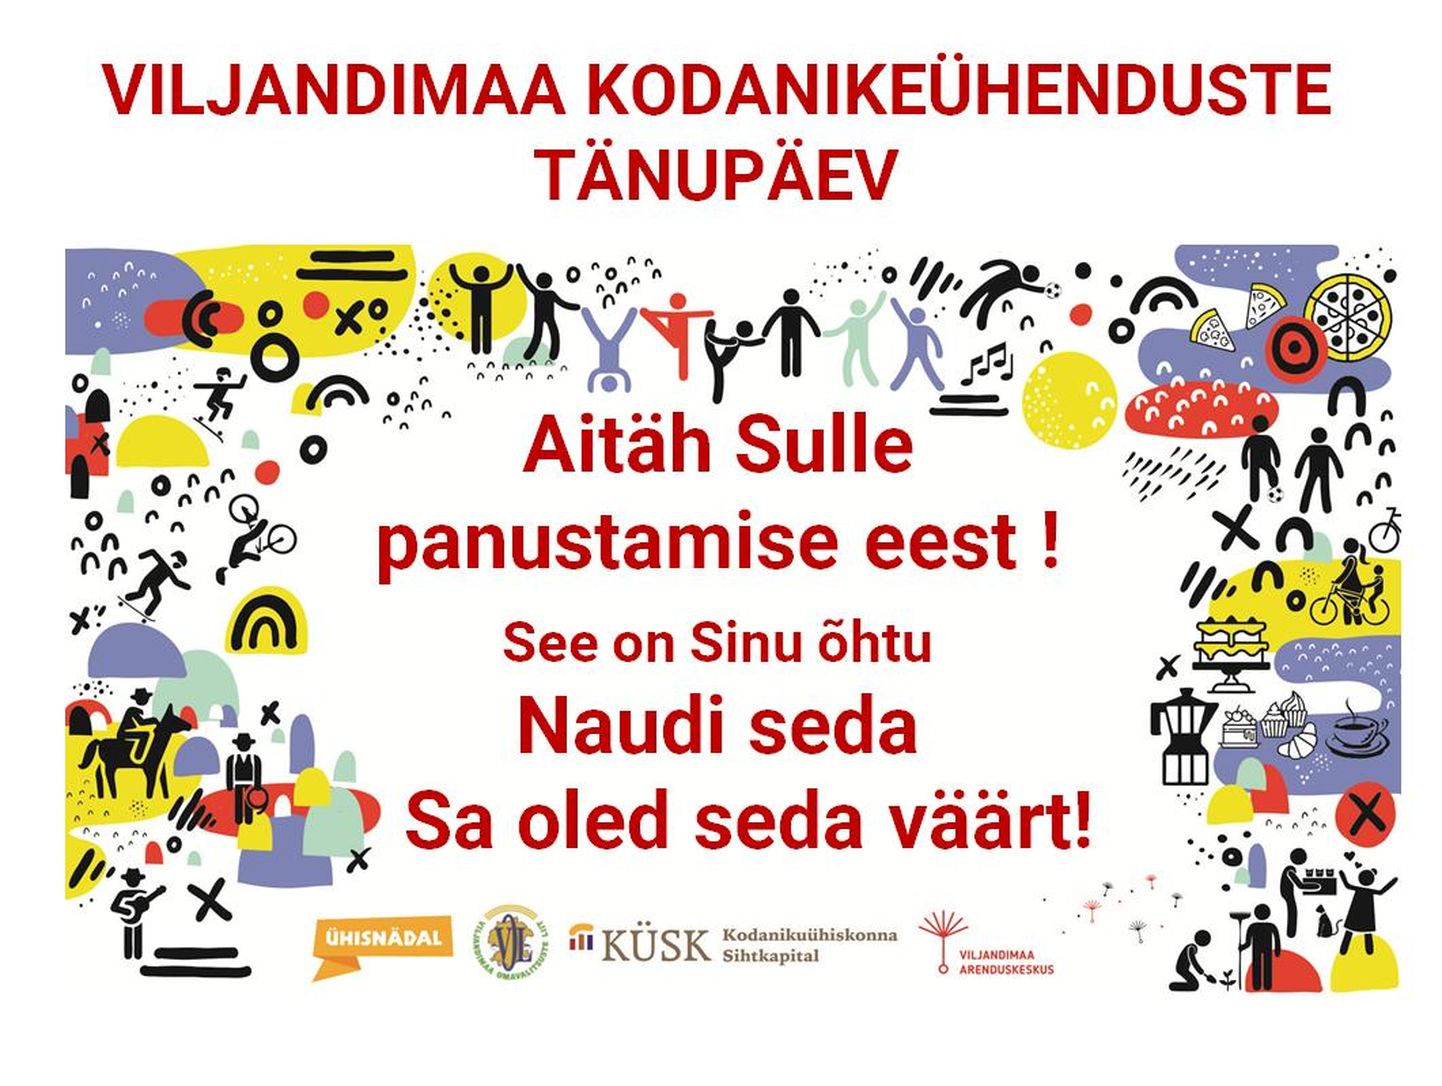 Täna on Viljandimaa kodanikeühenduste tänupäev.